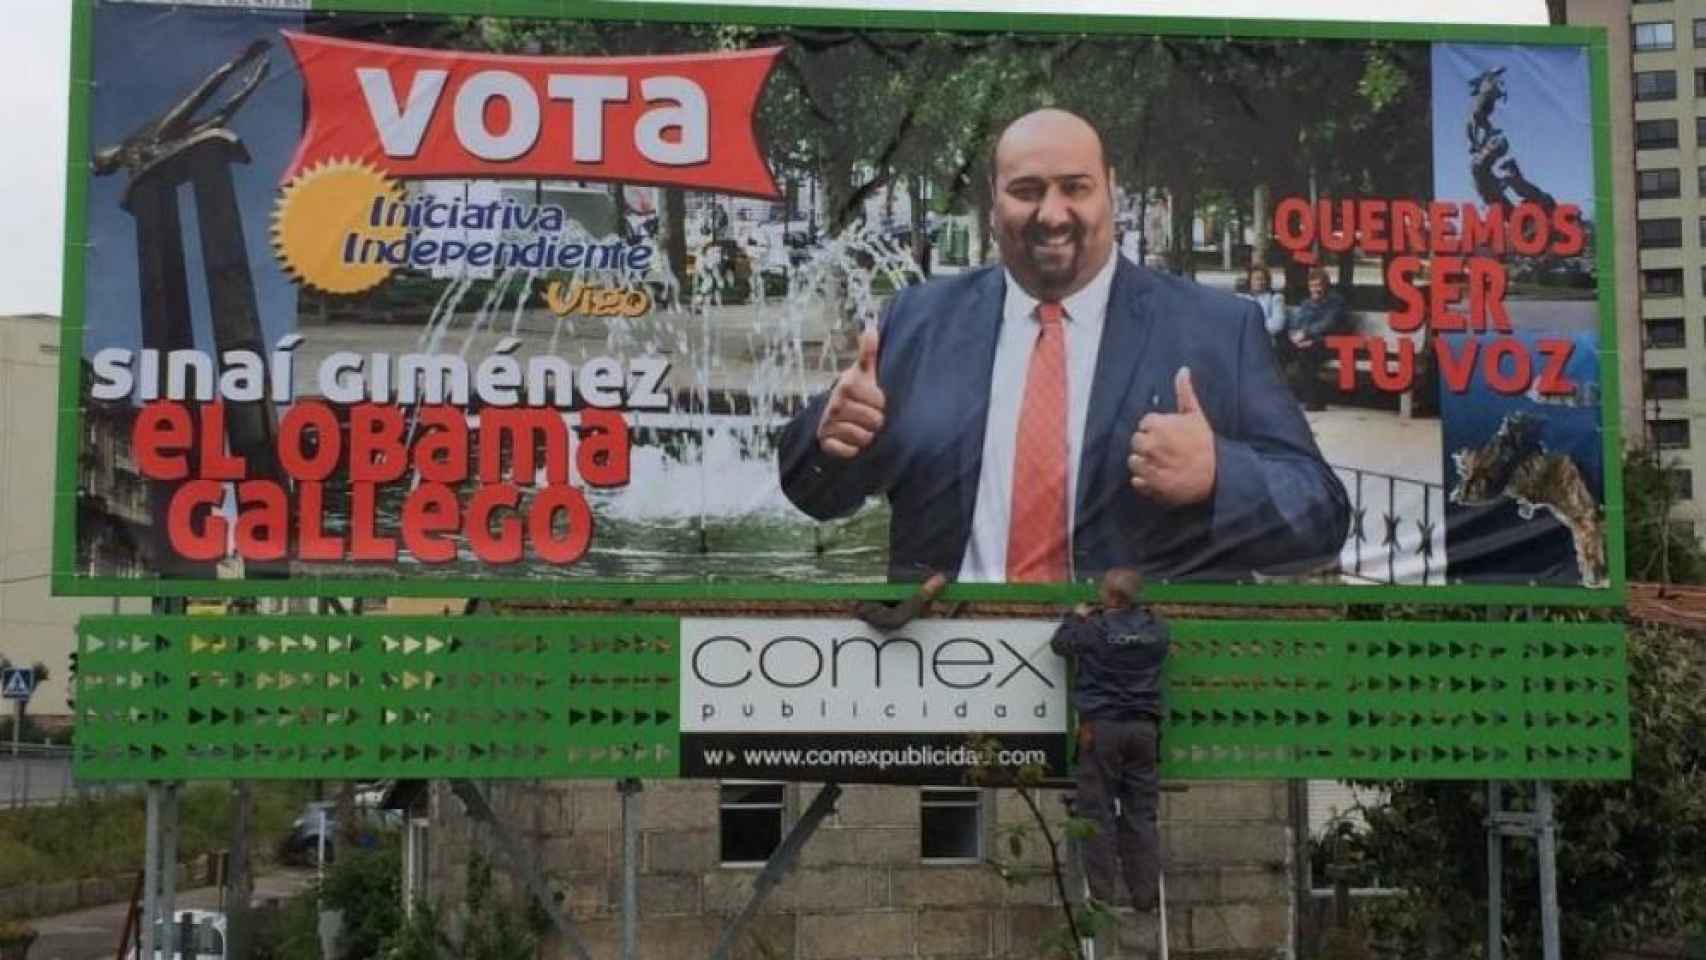 Sinaí Giménez en el cartel electoral de las elecciones de Vigo en 2015.